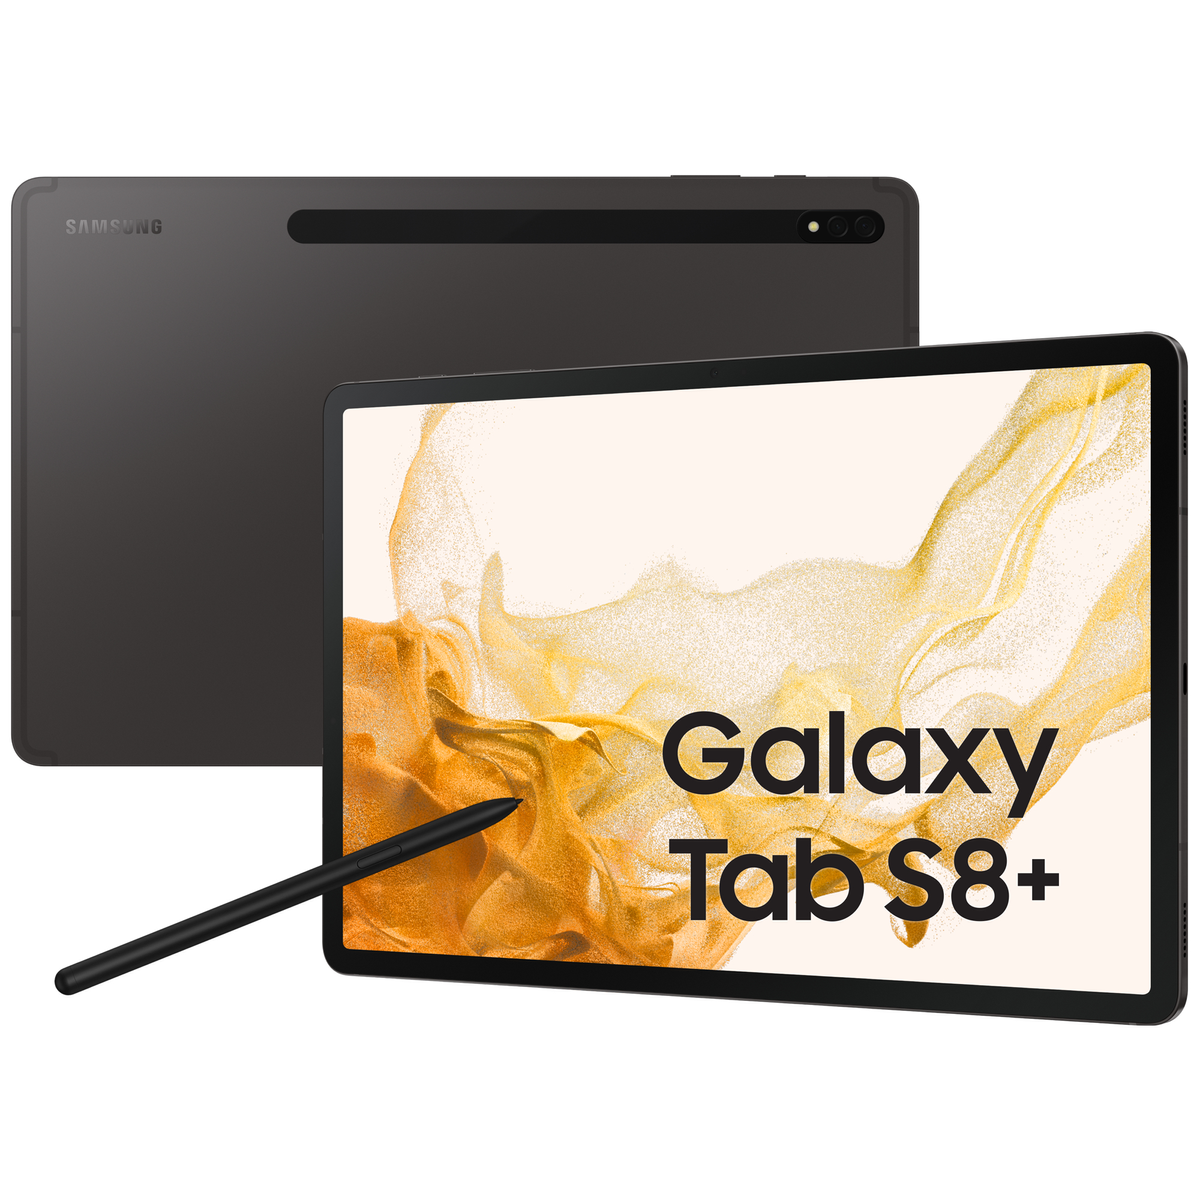 SAMSUNG Galaxy Tab S8+ Tablet, 128GB 128 Zoll, Grey, 12,4 Grau GB, Wi-Fi/LTE